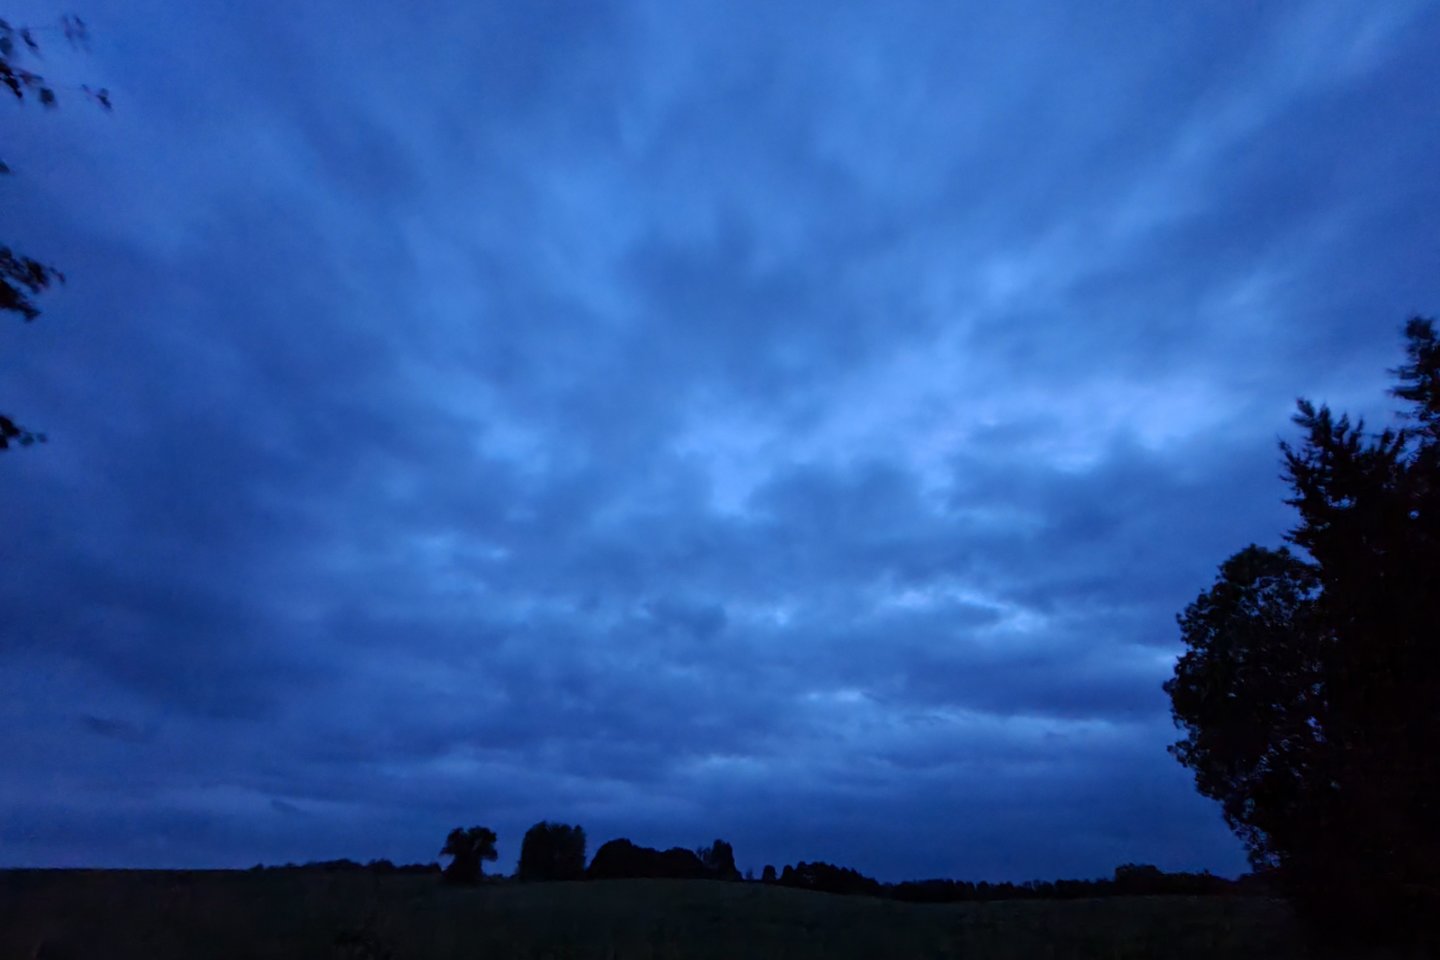   Naktinė fotografija be papildomų šviesos šaltinių. Nors taip ir neatrodo, fotografuota stiprioje tamsoje, rugpjūčio vakarą apie 23 val. kaime. Kontrastai silpni, ryškumas irgi.<br> A. Rutkausko nuotr.